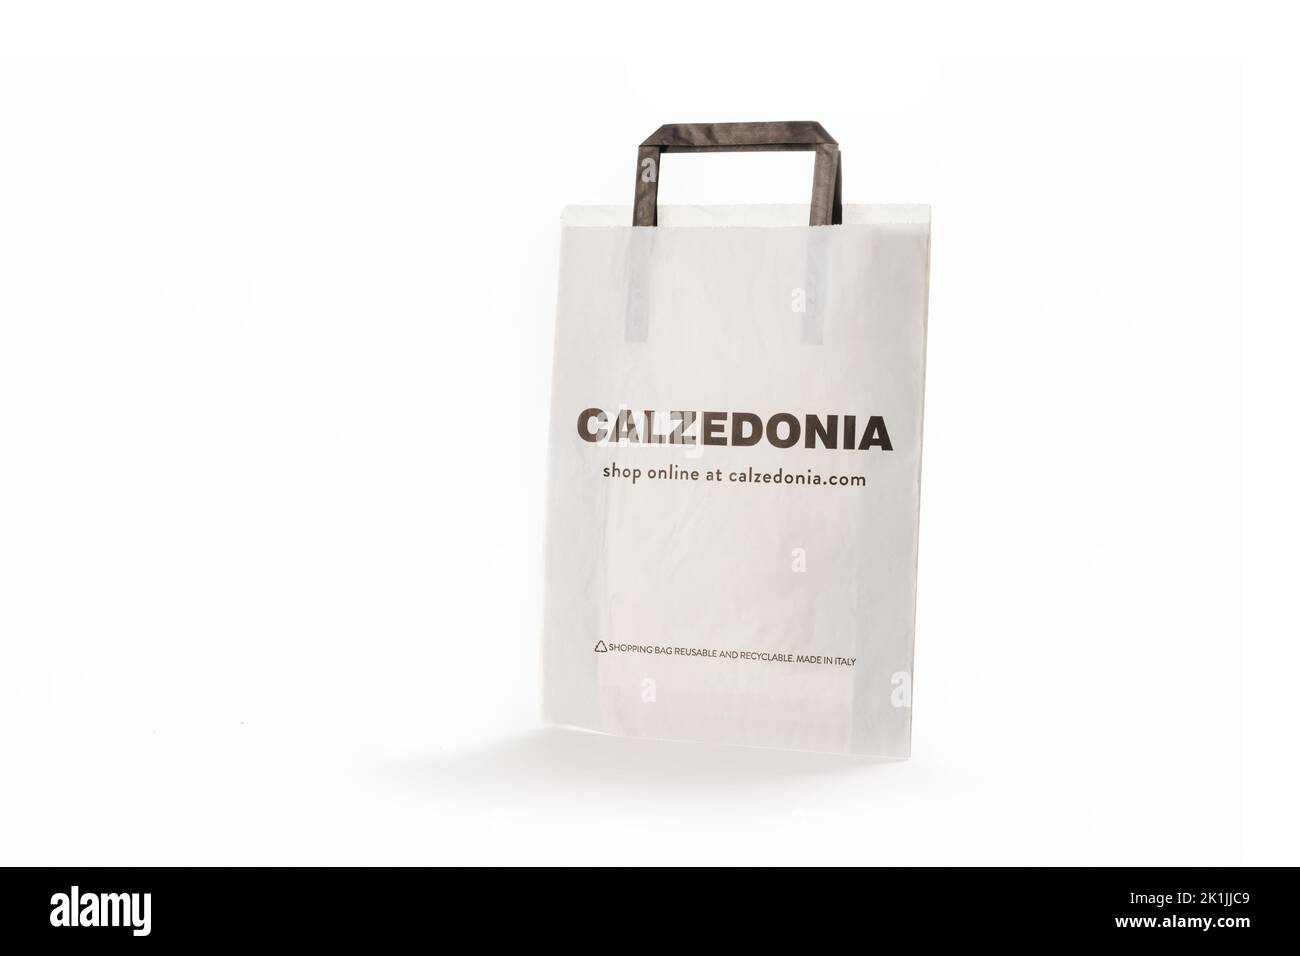 Zypern, Paphos - 08. SEPTEMBER 2022: Gebrandete Papiertasche von Calzedonia Italienischer spezialisierter Bekleidungsladen, der Badeanzüge, Strumpfhosen und Leggings verkauft. Ov Stockfoto